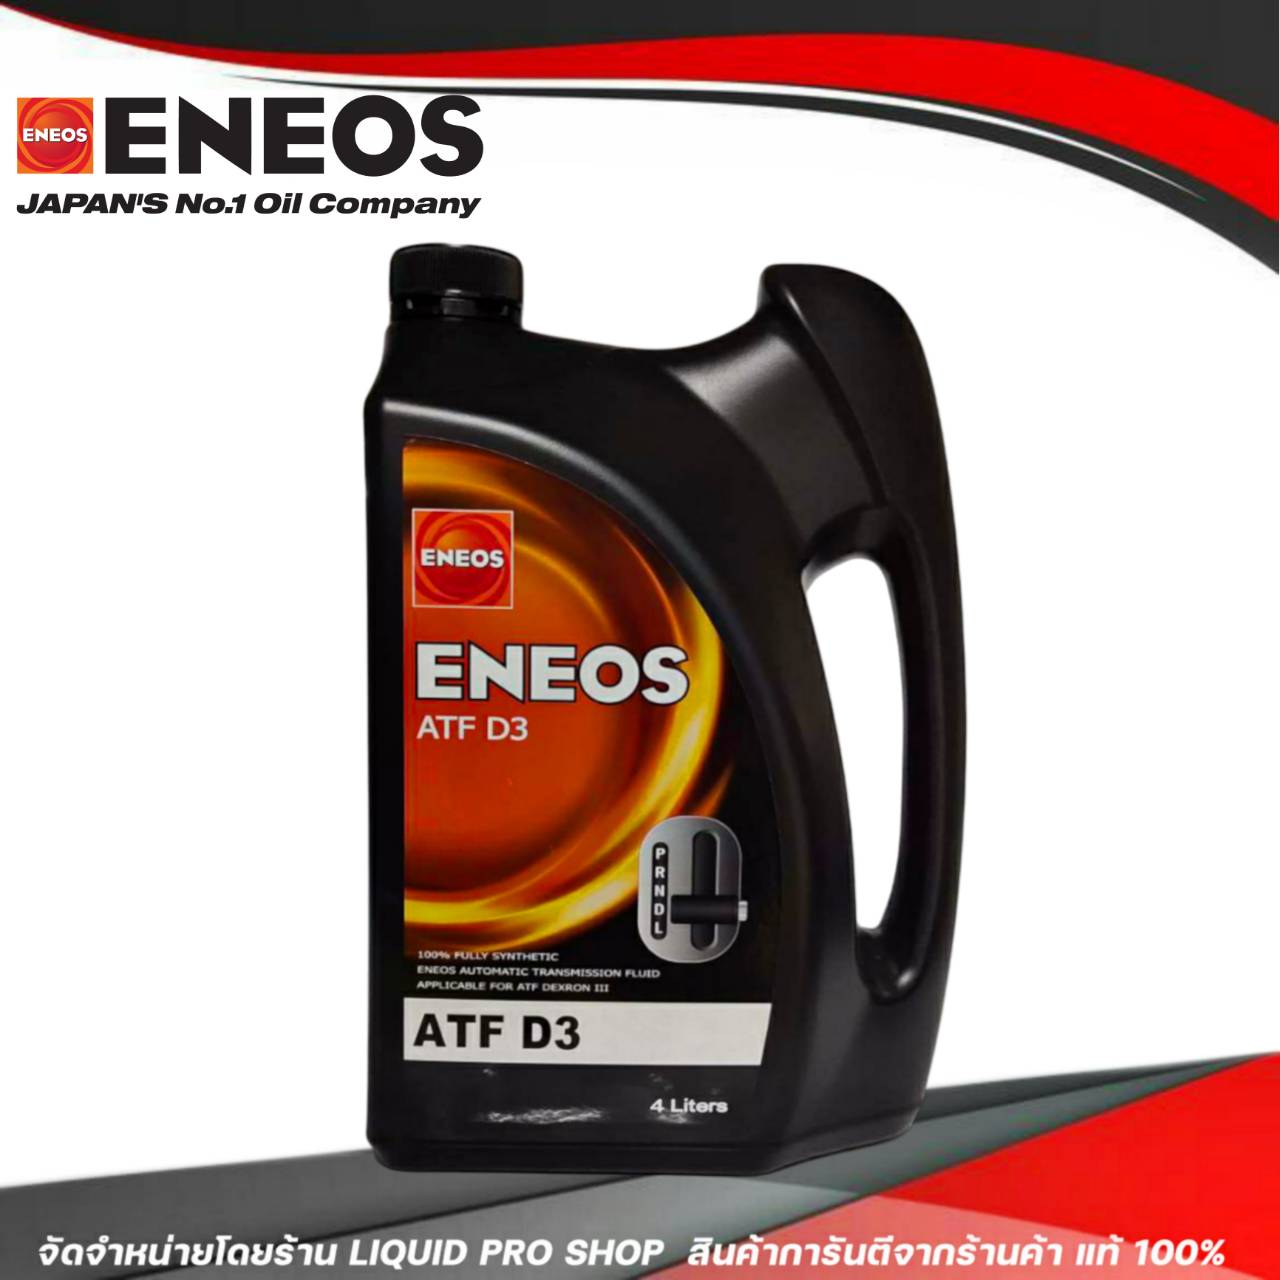 ข้อมูลเกี่ยวกับ ENEOS น้ำมันเกียร์อัตโนมัติ ENEOS ATF D3 น้ำมันเกียร์ออโต้เมติค พาวเวอร์ สูตรสังเคราห์แท้ 100% (ขนาด 4 ลิตร)